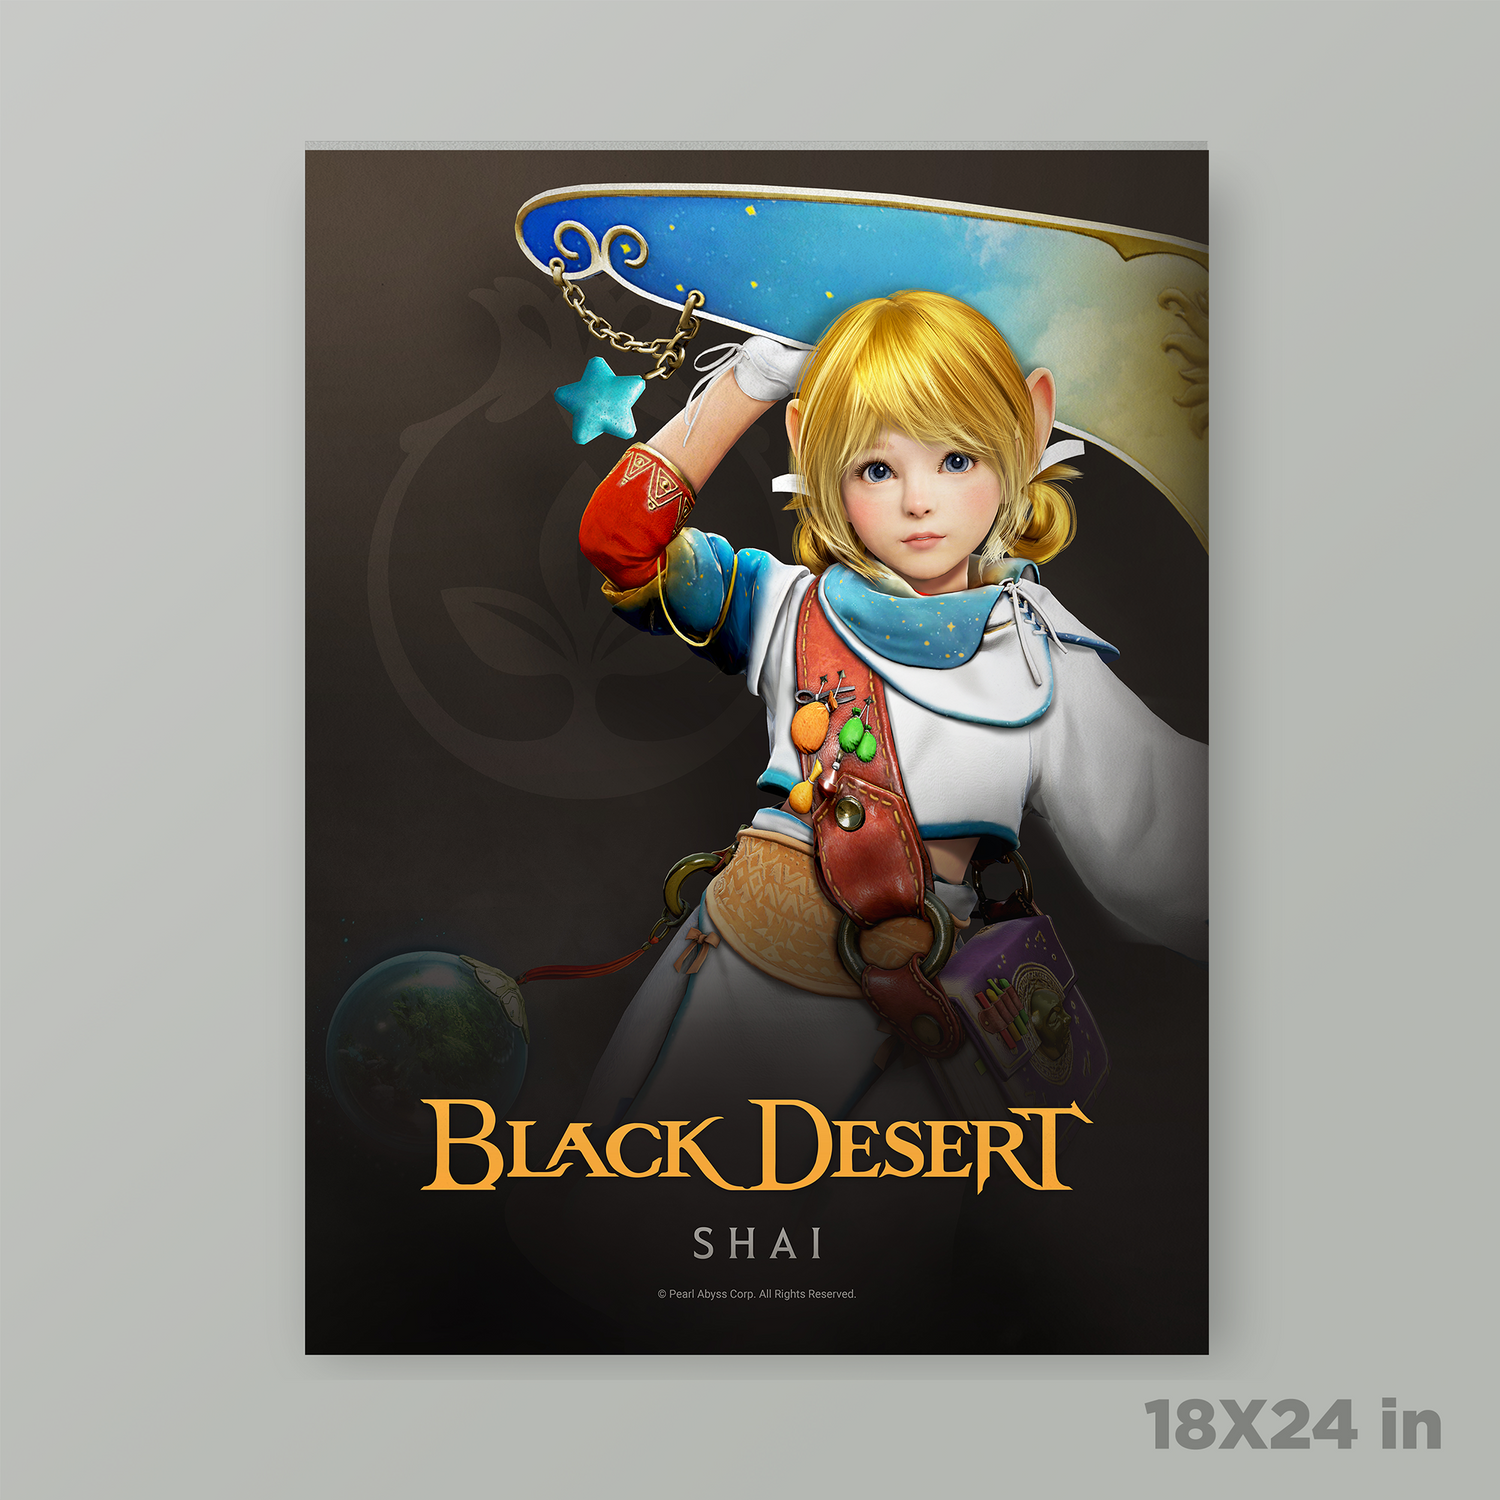 Black Desert Shai Poster